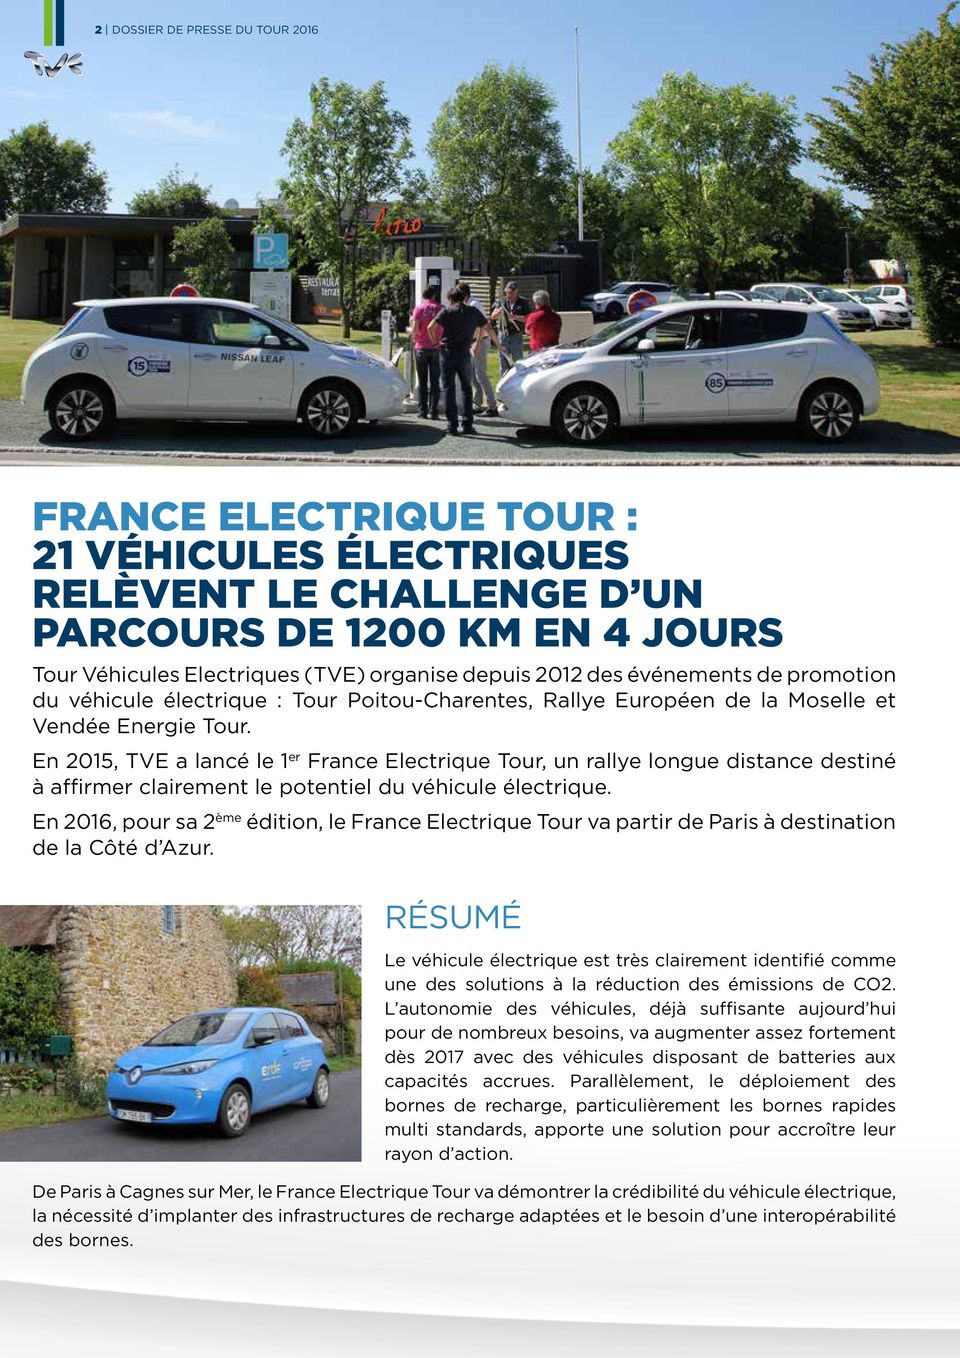 En 2015, TVE a lancé le 1 er France Electrique Tour, un rallye longue distance destiné à affirmer clairement le potentiel du véhicule électrique.